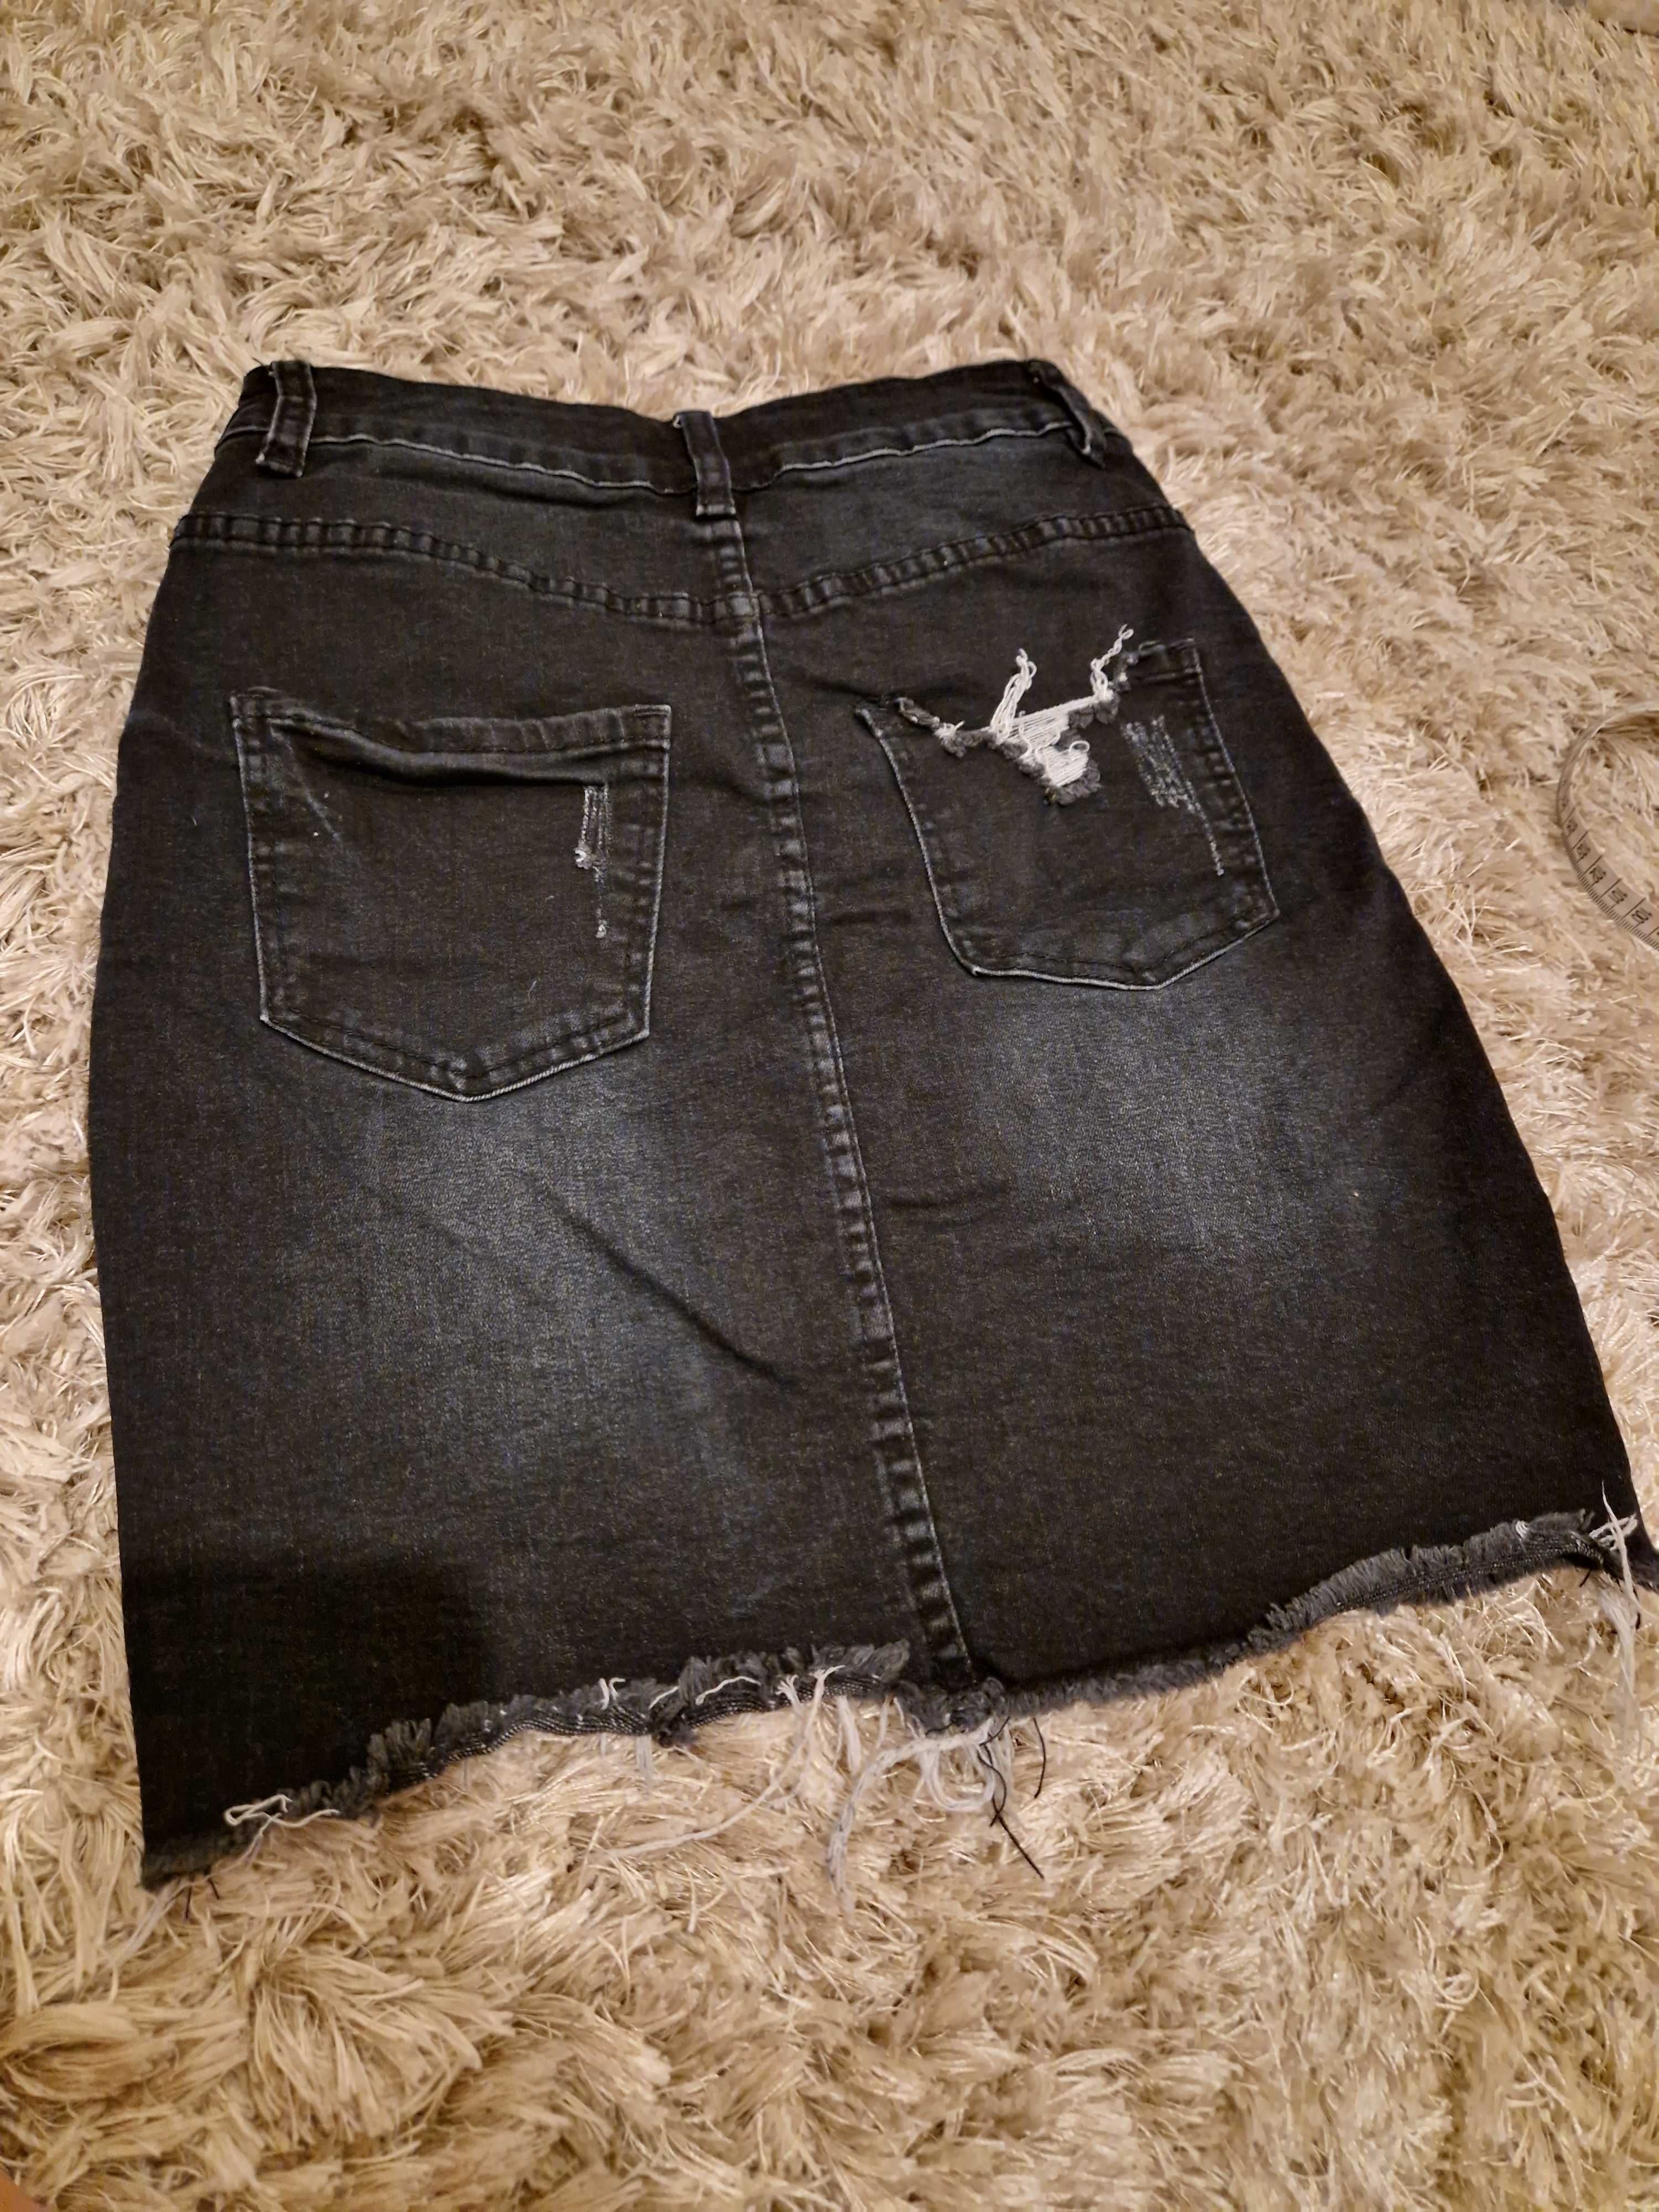 Piekna czarna spodnica jeansowa firmy Amisu rozmiar 34